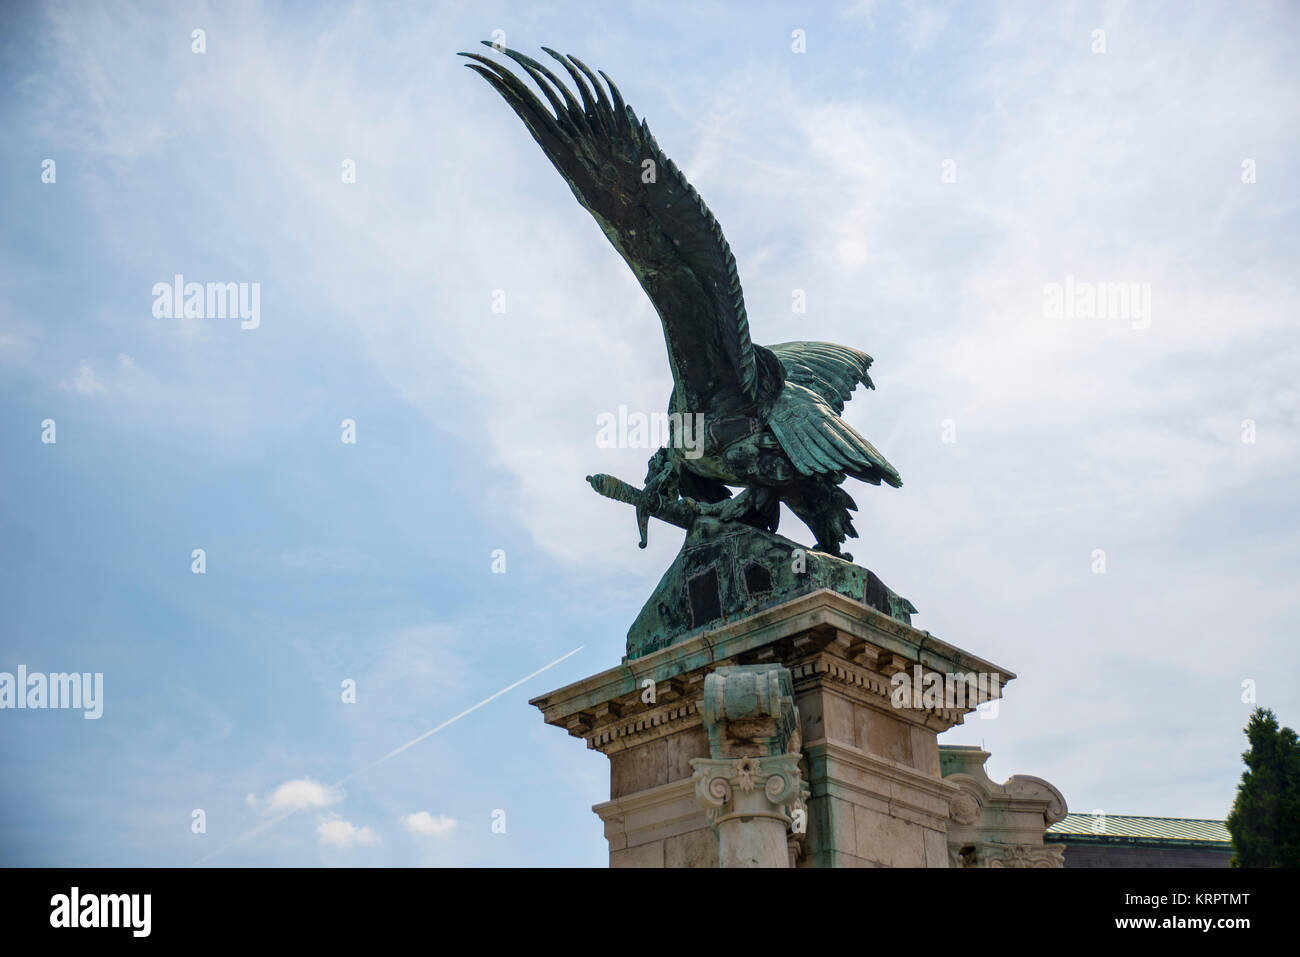 Turul uccello statua, Budapest Foto Stock